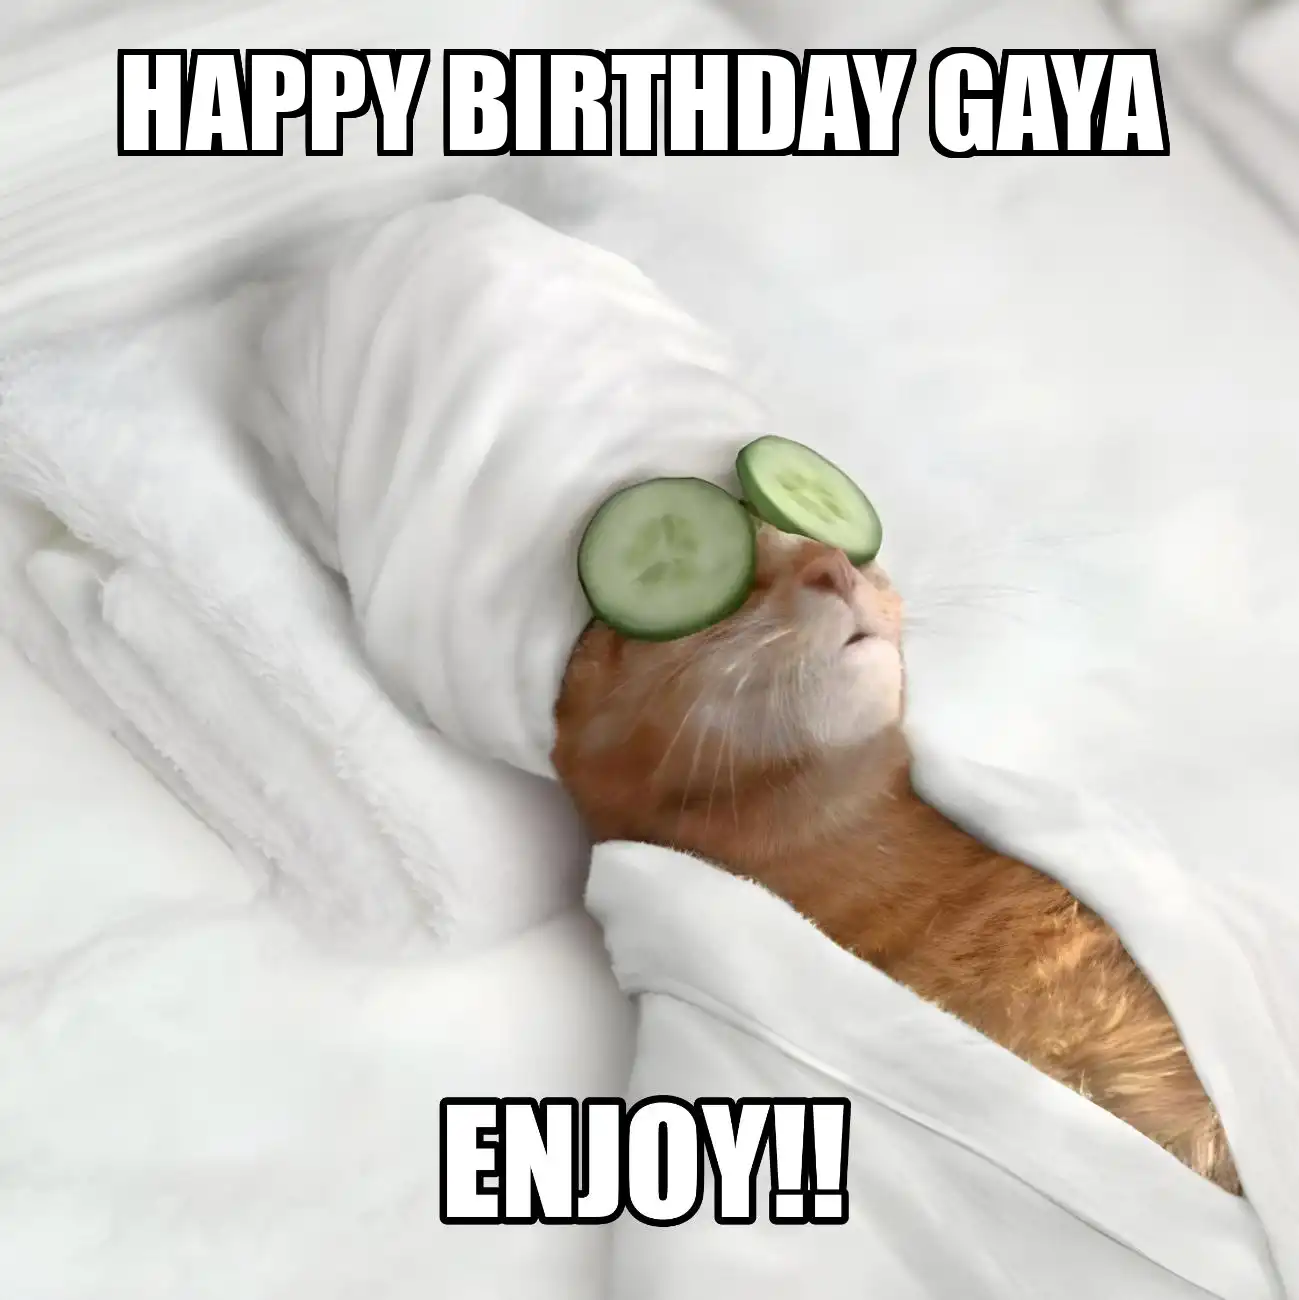 Happy Birthday Gaya Enjoy Cat Meme